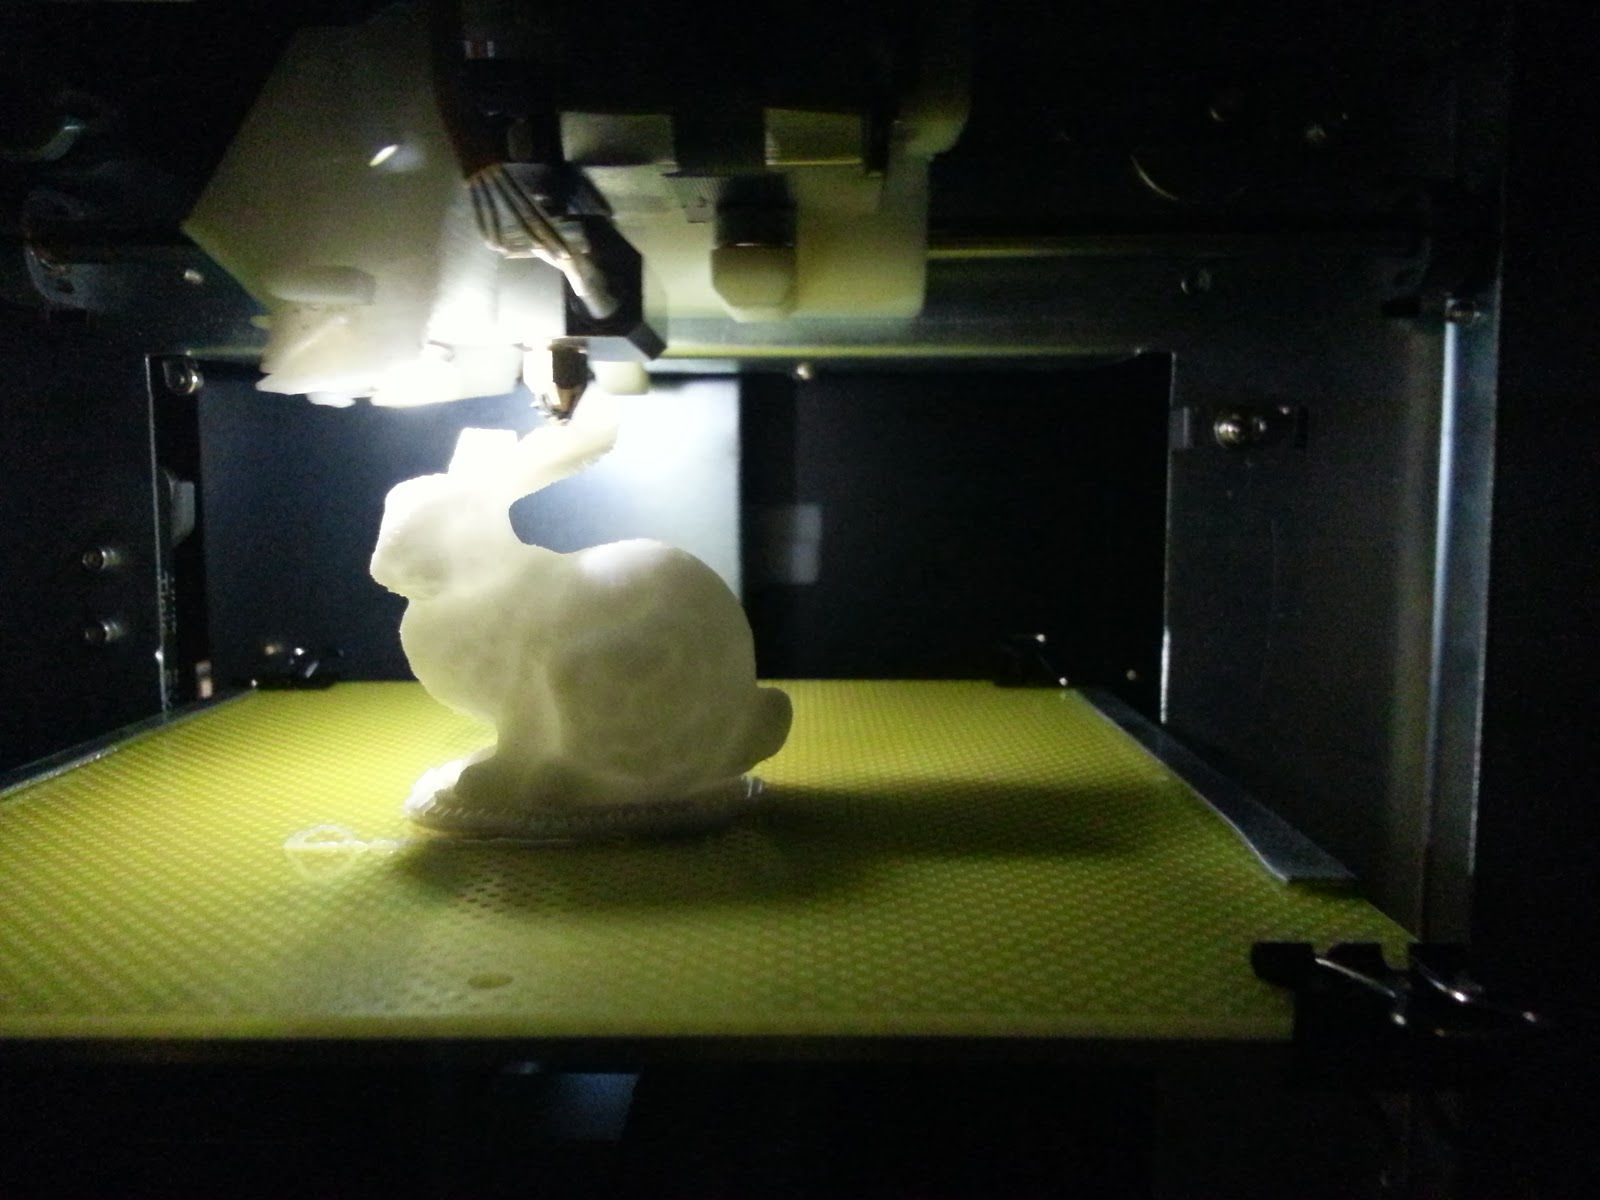 Mini UP! 3D printer, first impressions - 20131106 153915